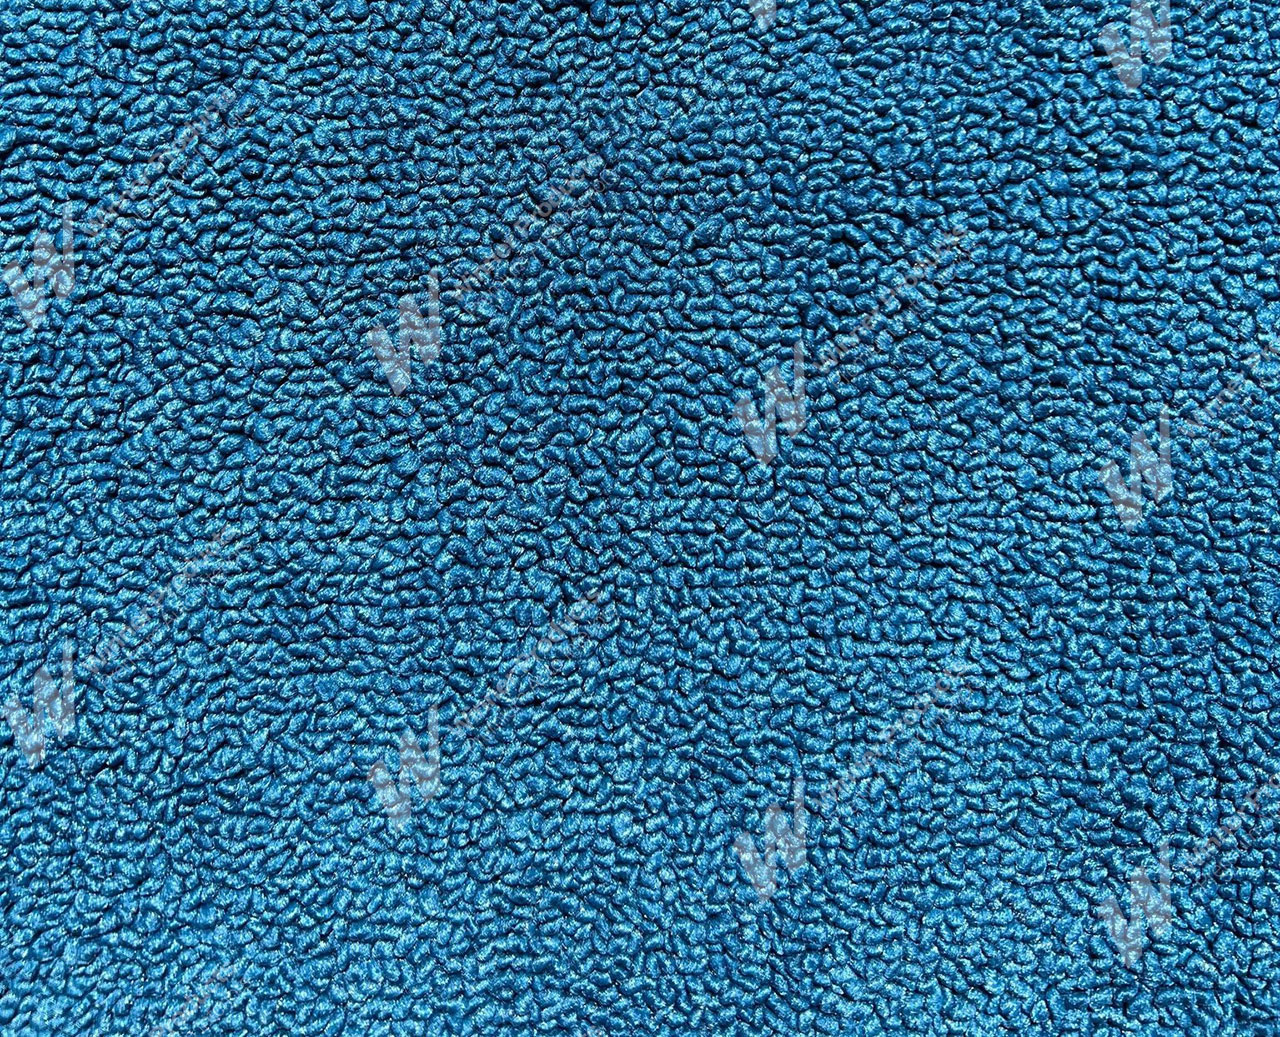 Holden Kingswood HT Kingswood Ute 14E Twilight Blue Carpet (Image 1 of 1)